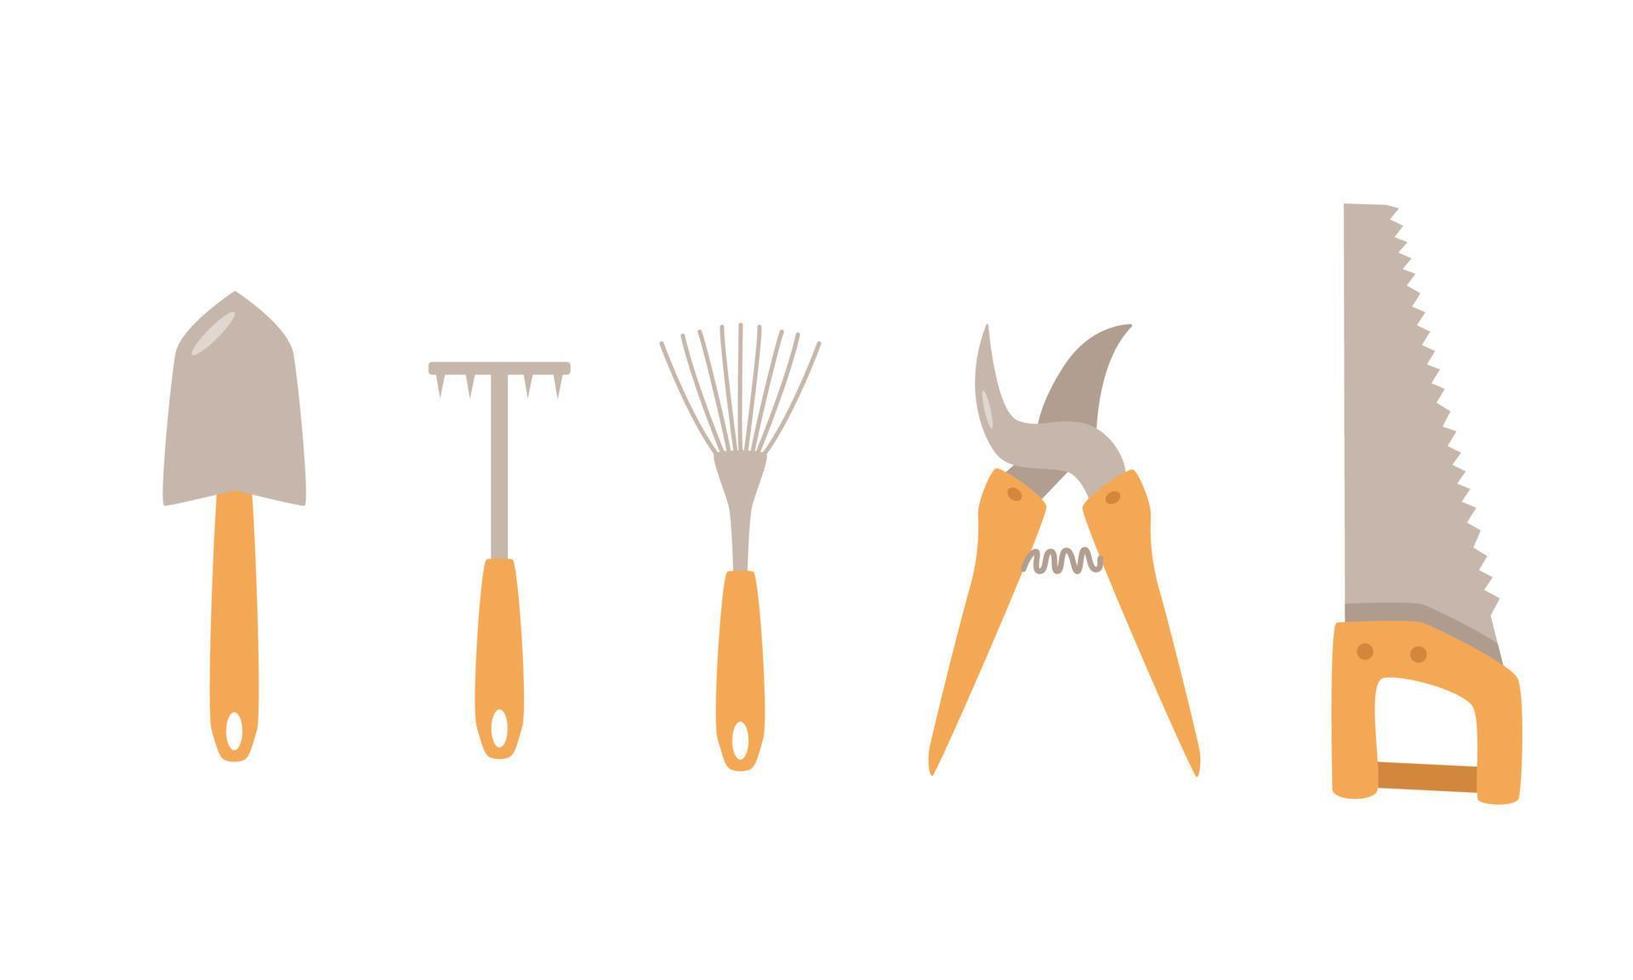 en uppsättning verktyg för trädgården. vektorillustration av en spade, hacka, kratta, handsåg och beskärare. vektor